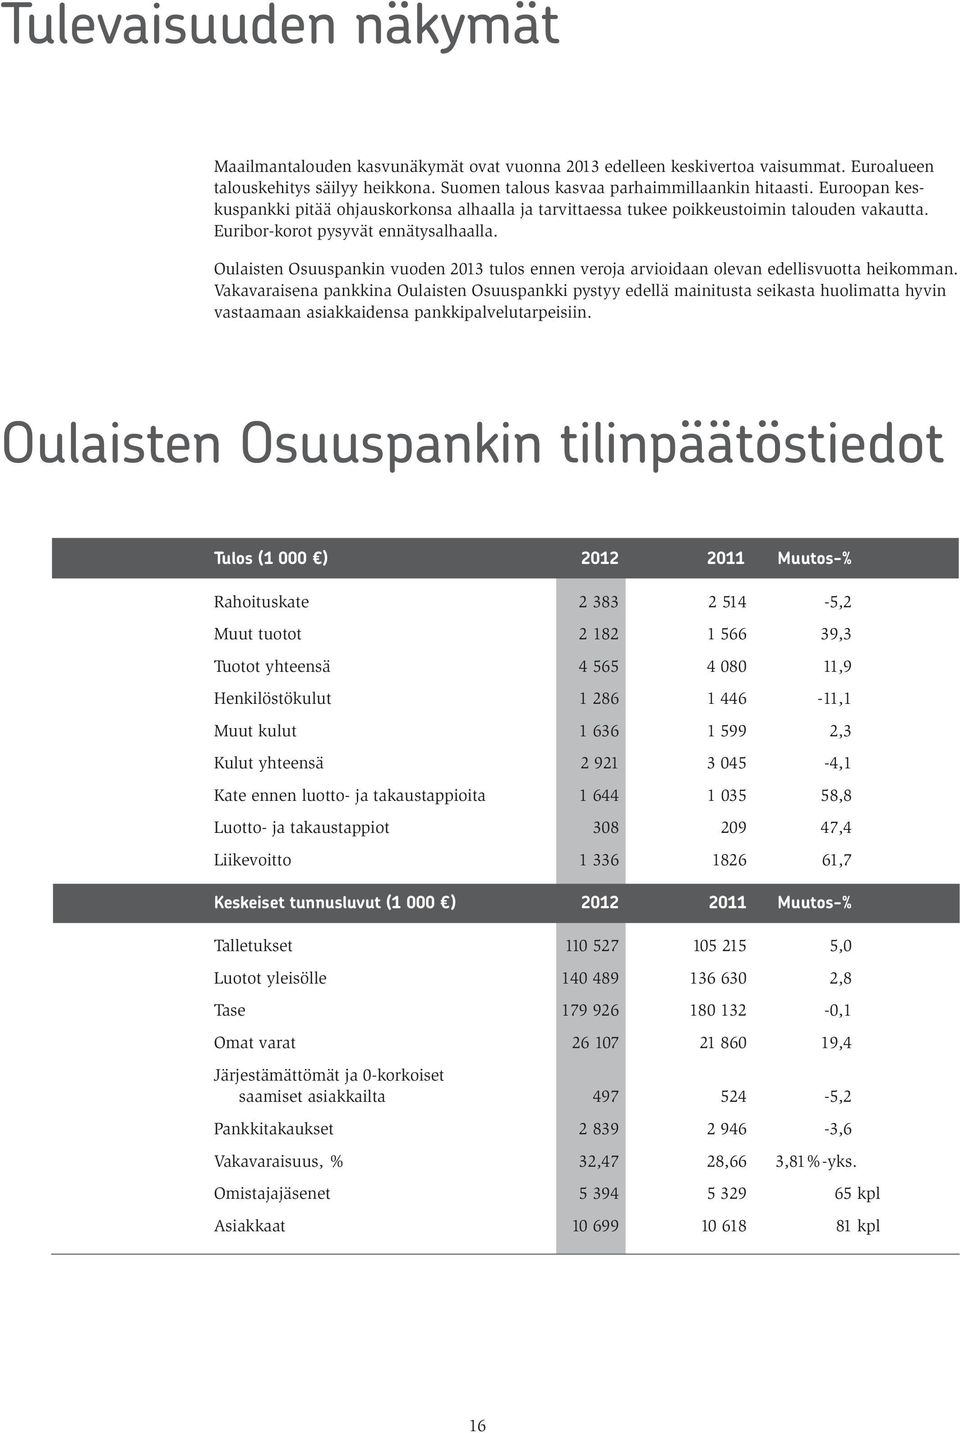 Oulaisten Osuuspankin vuoden 2013 tulos ennen veroja arvioidaan olevan edellisvuotta heikomman.